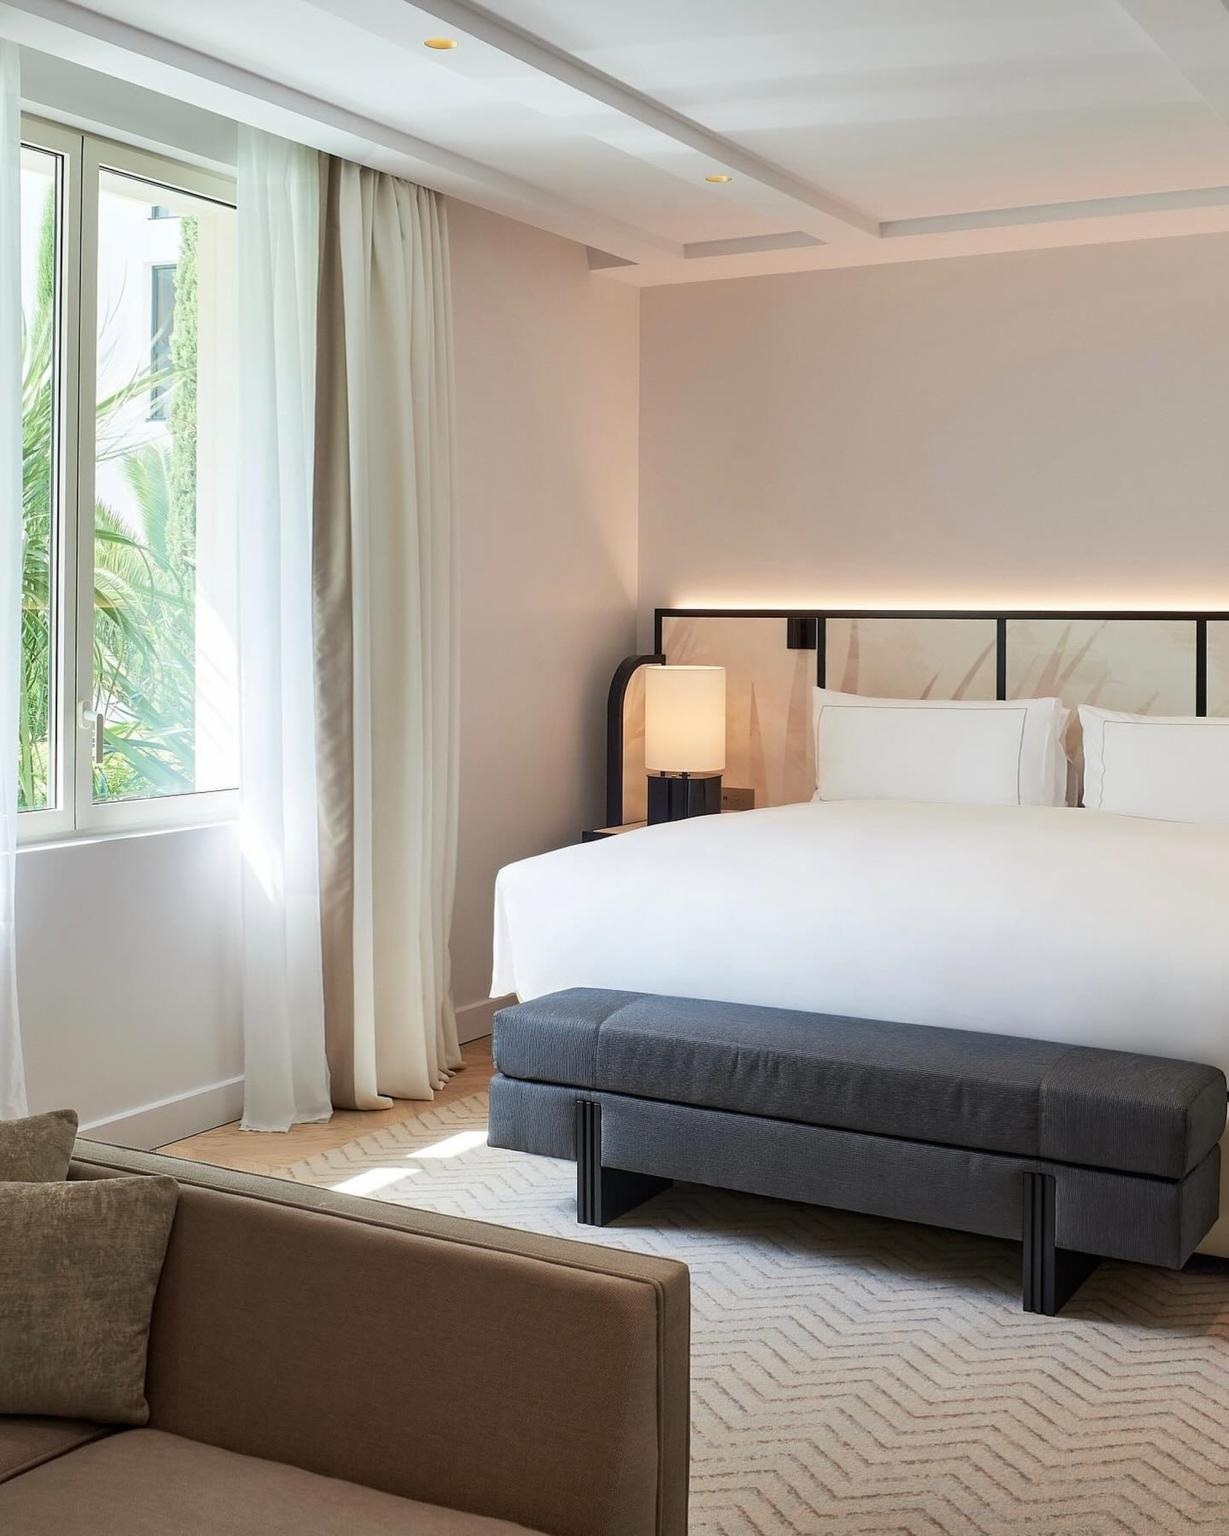 View - Phòng khách sạn 9.000 USD/đêm của siêu mẫu Heidi Klum tại LHP Cannes | Báo Dân trí